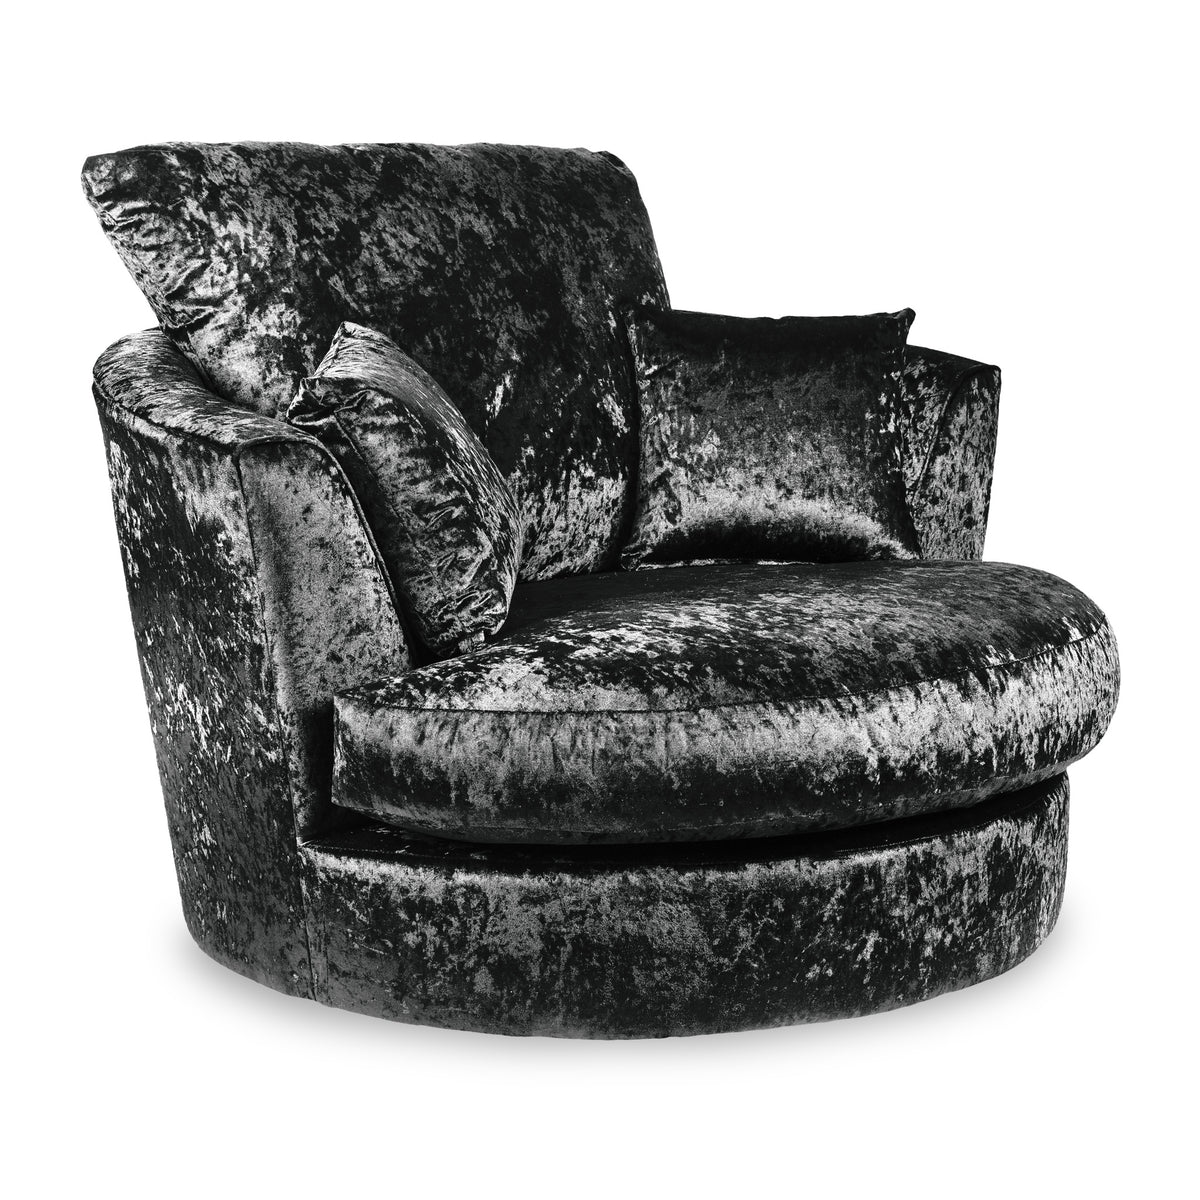 Tamara Black Crushed Velvet Swivel Chair from Roseland Furniture